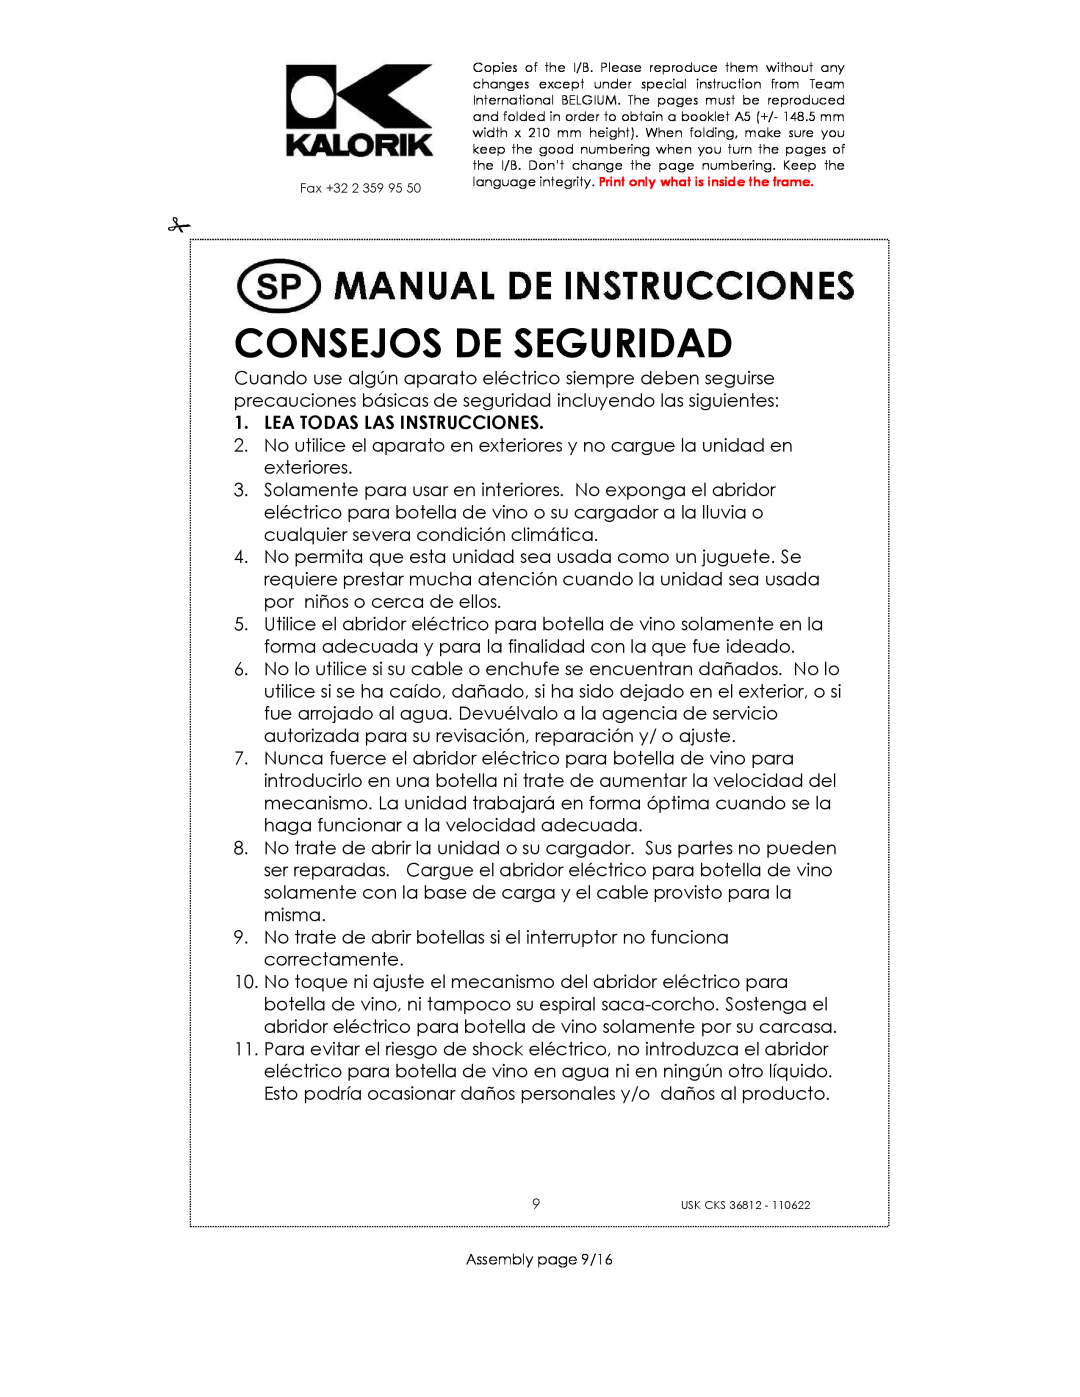 Kalorik USK CKS 36812 manual Consejos De Seguridad, Lea Todas Las Instrucciones 